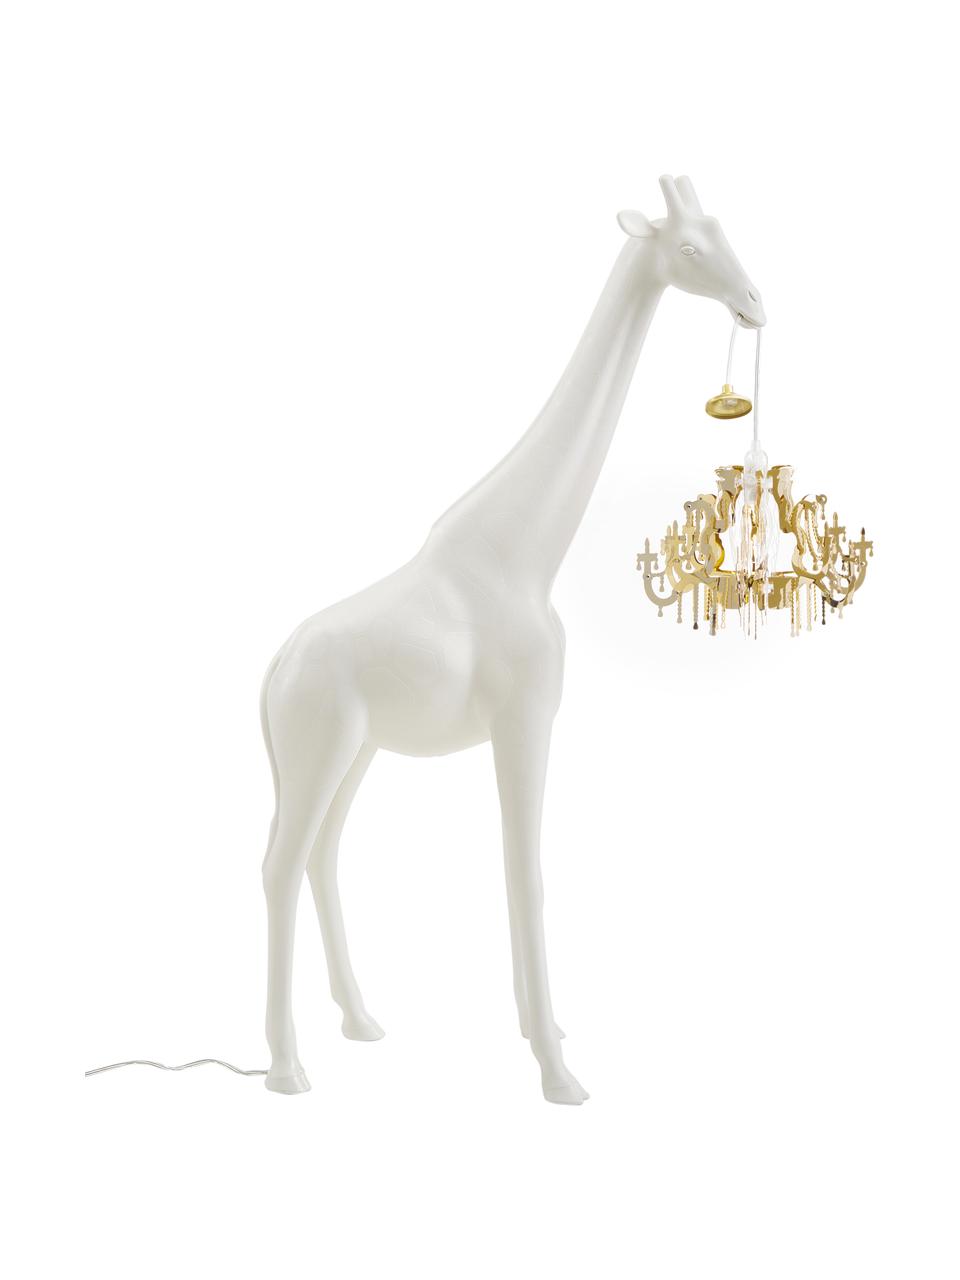 Petite borne d'éclairage design Giraffe in Love, Blanc, couleur dorée